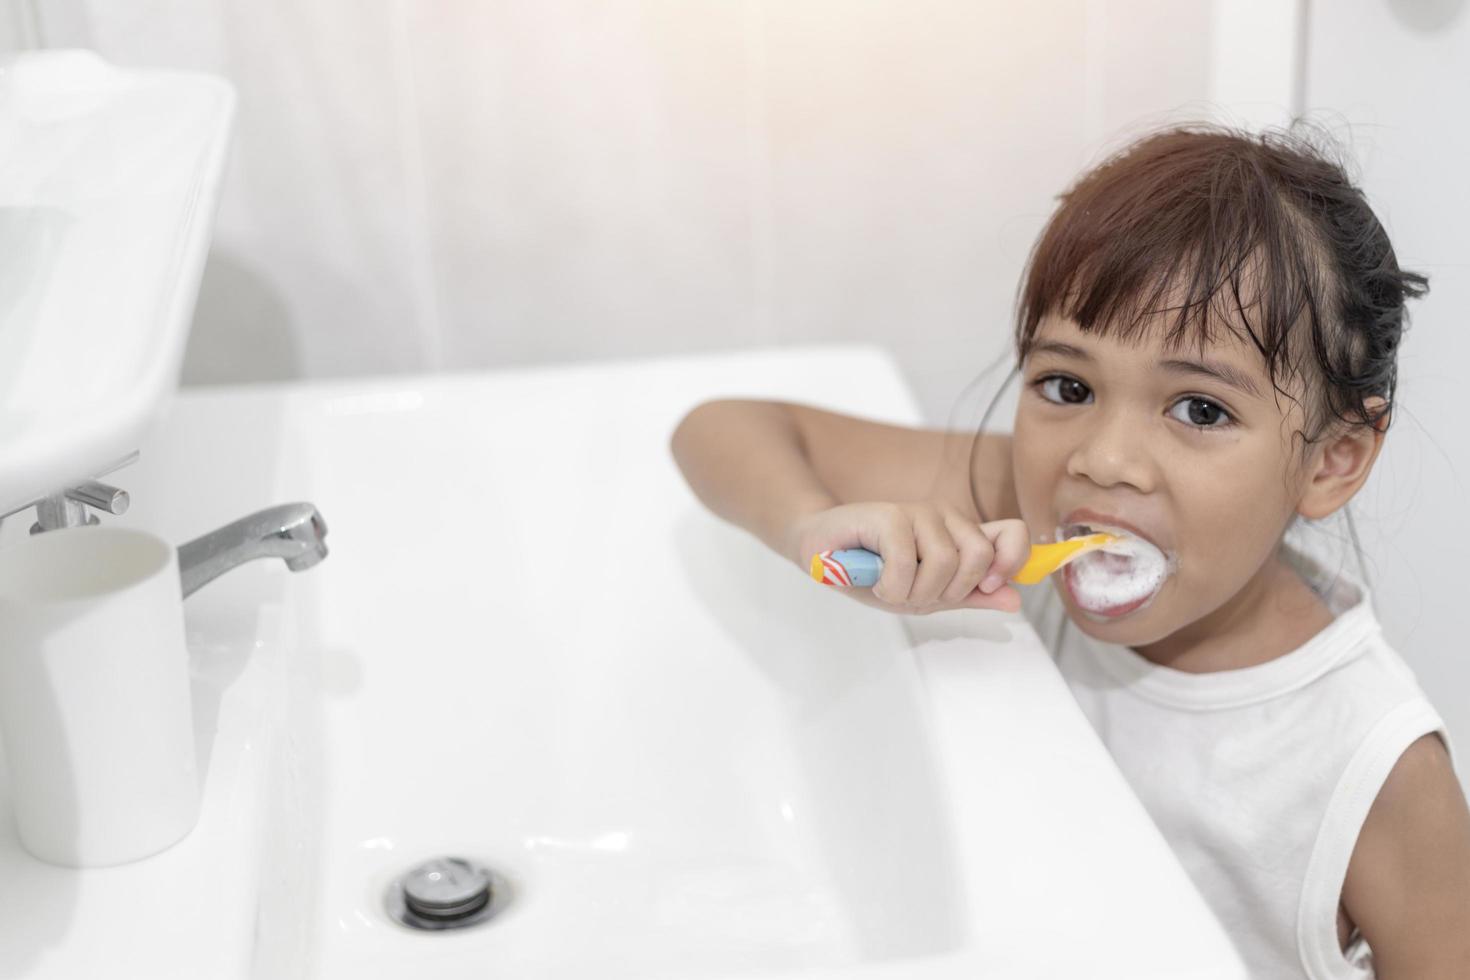 pequeña y linda niña limpiándose los dientes con un cepillo de dientes en el baño foto